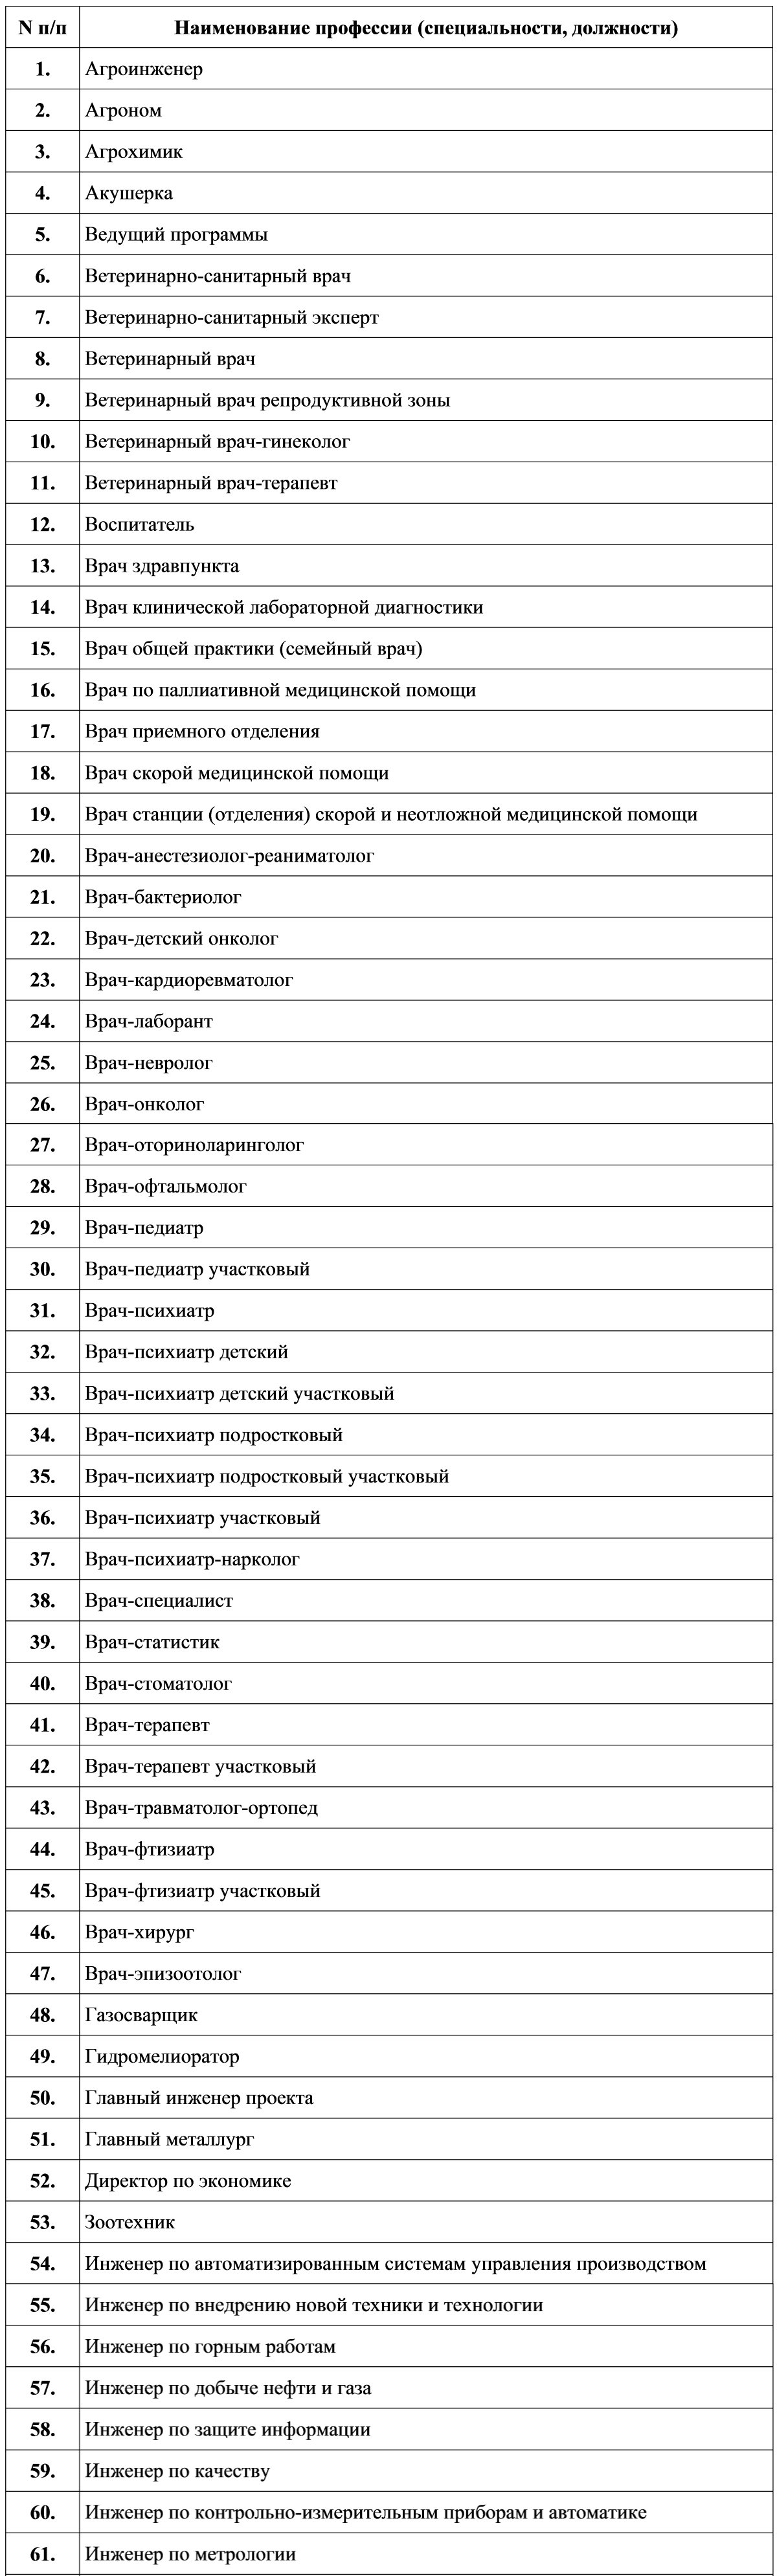 Список профессий для упрощенного получения гражданства РФ